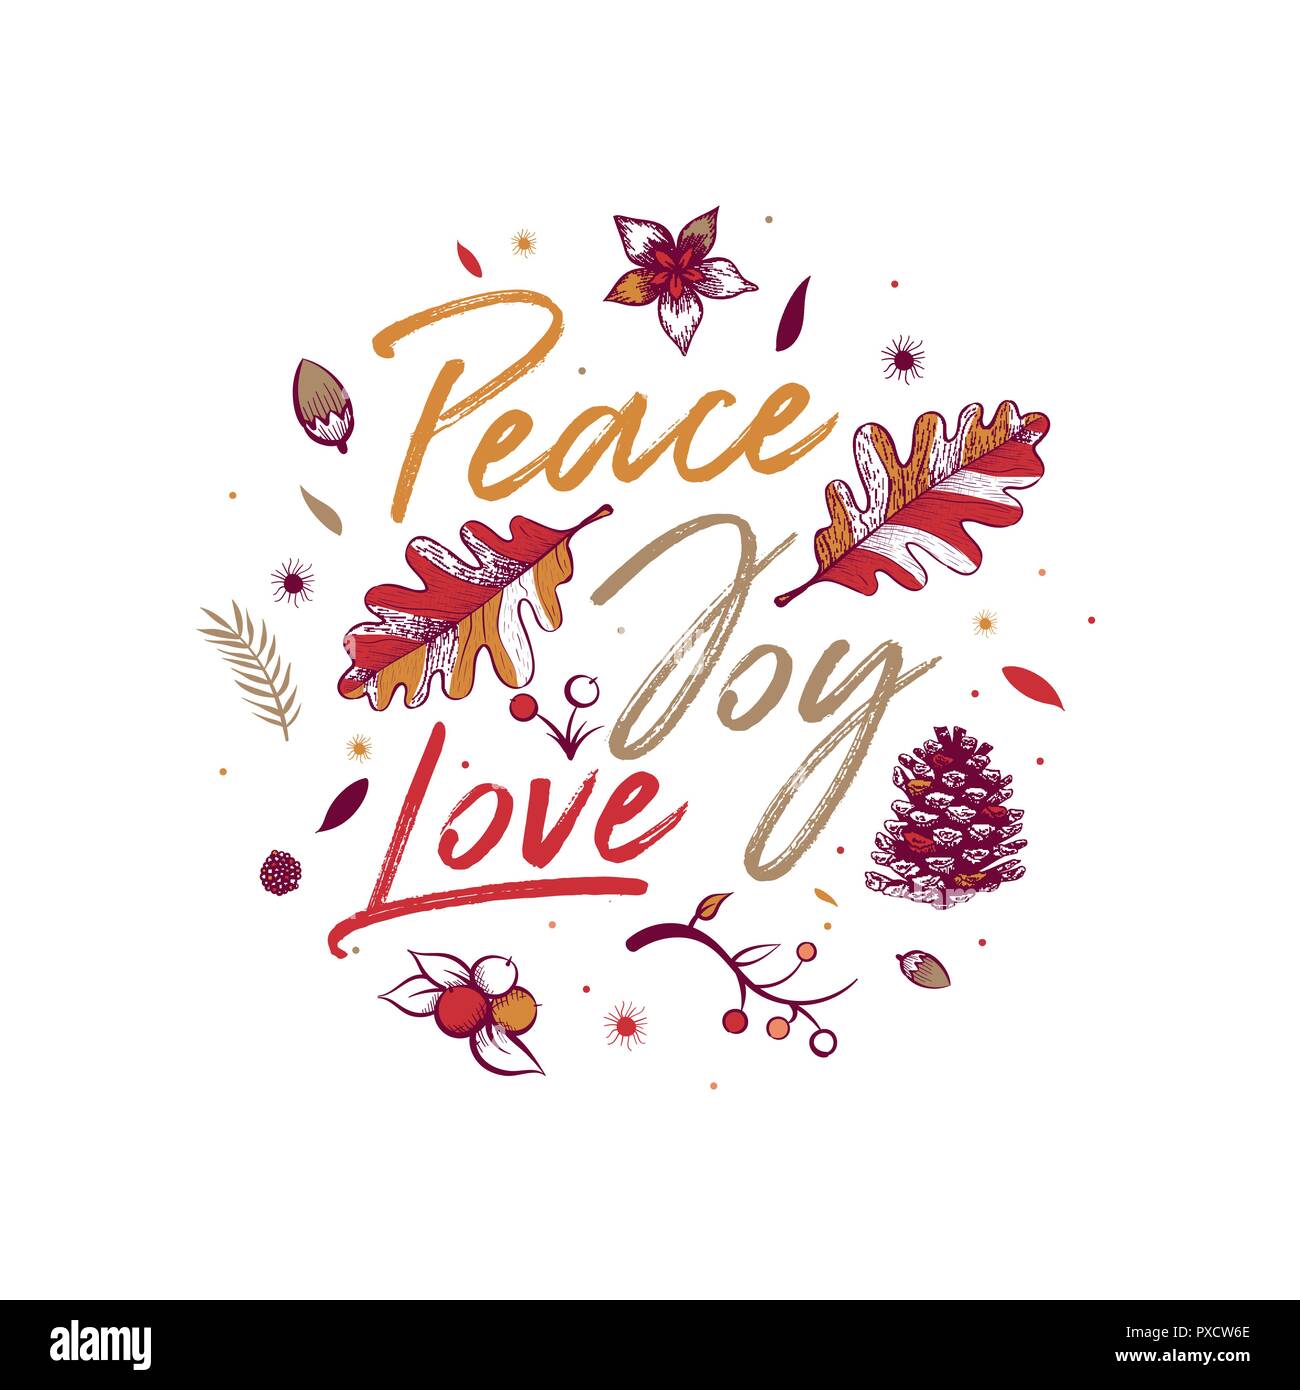 La pace e la gioia, l'amore. Natale greeting card design con disegnati a mano naturale oggetti d'inverno. Illustrazione Vettoriale